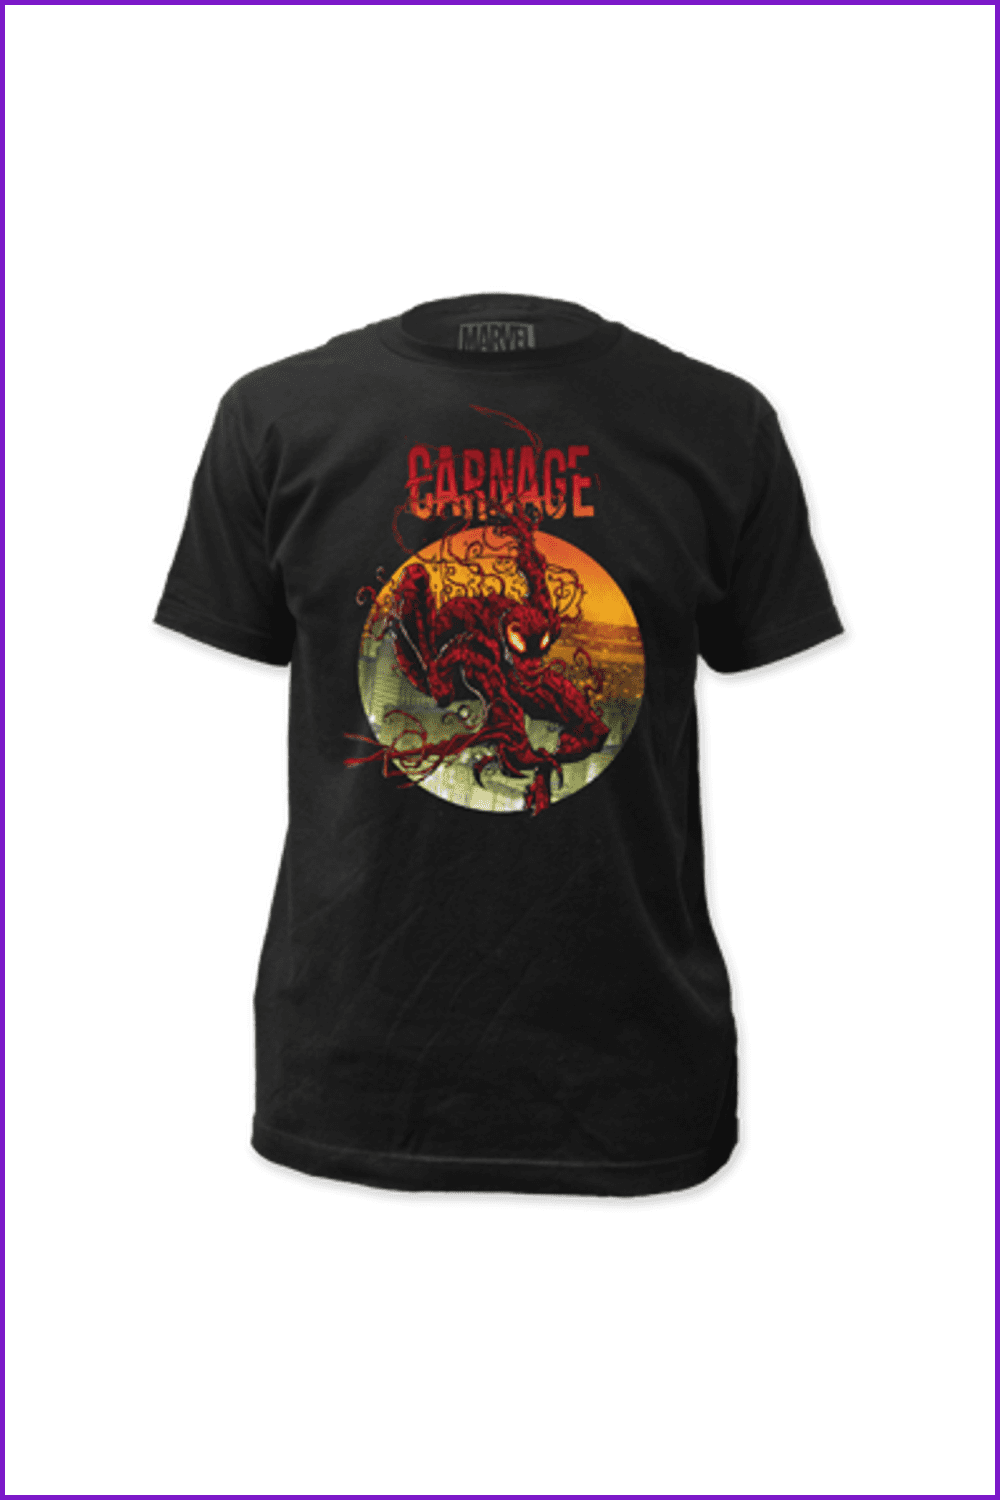 Carnage T-Shirt.